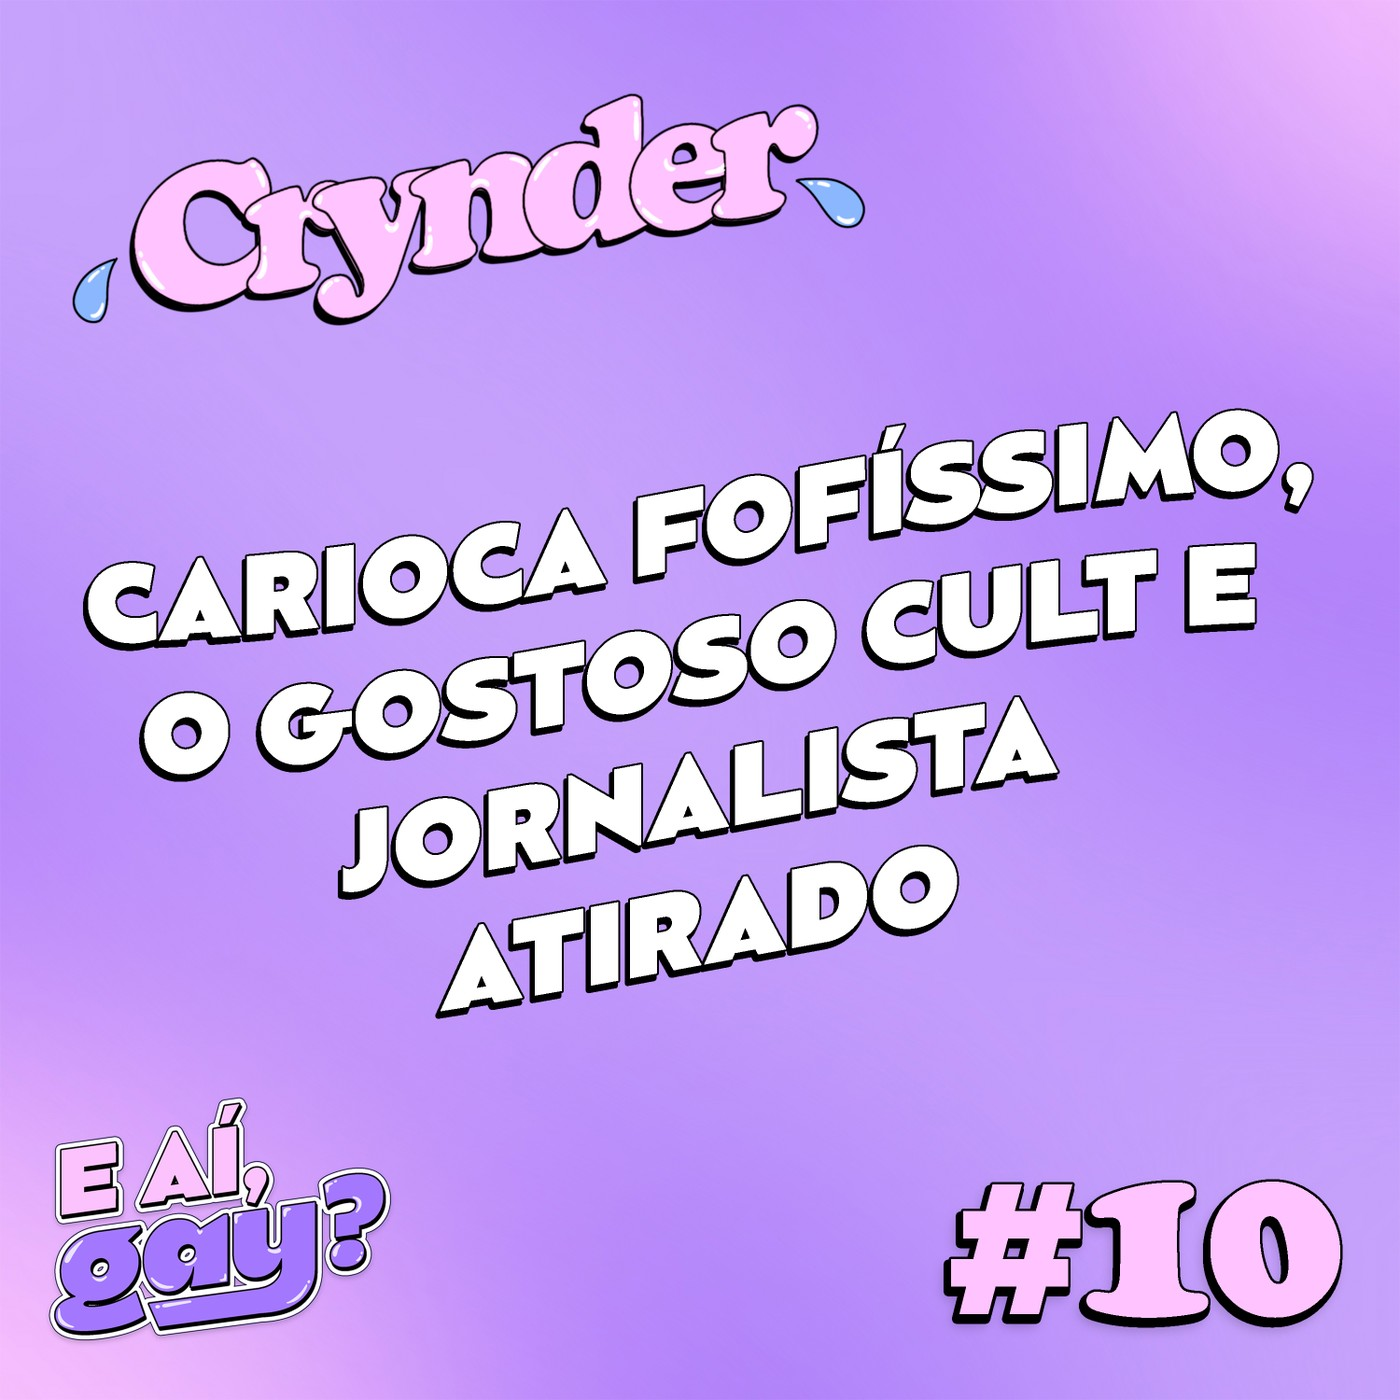 Crynder #10 - Carioca fofíssimo, o gostoso cult e jornalista atirado